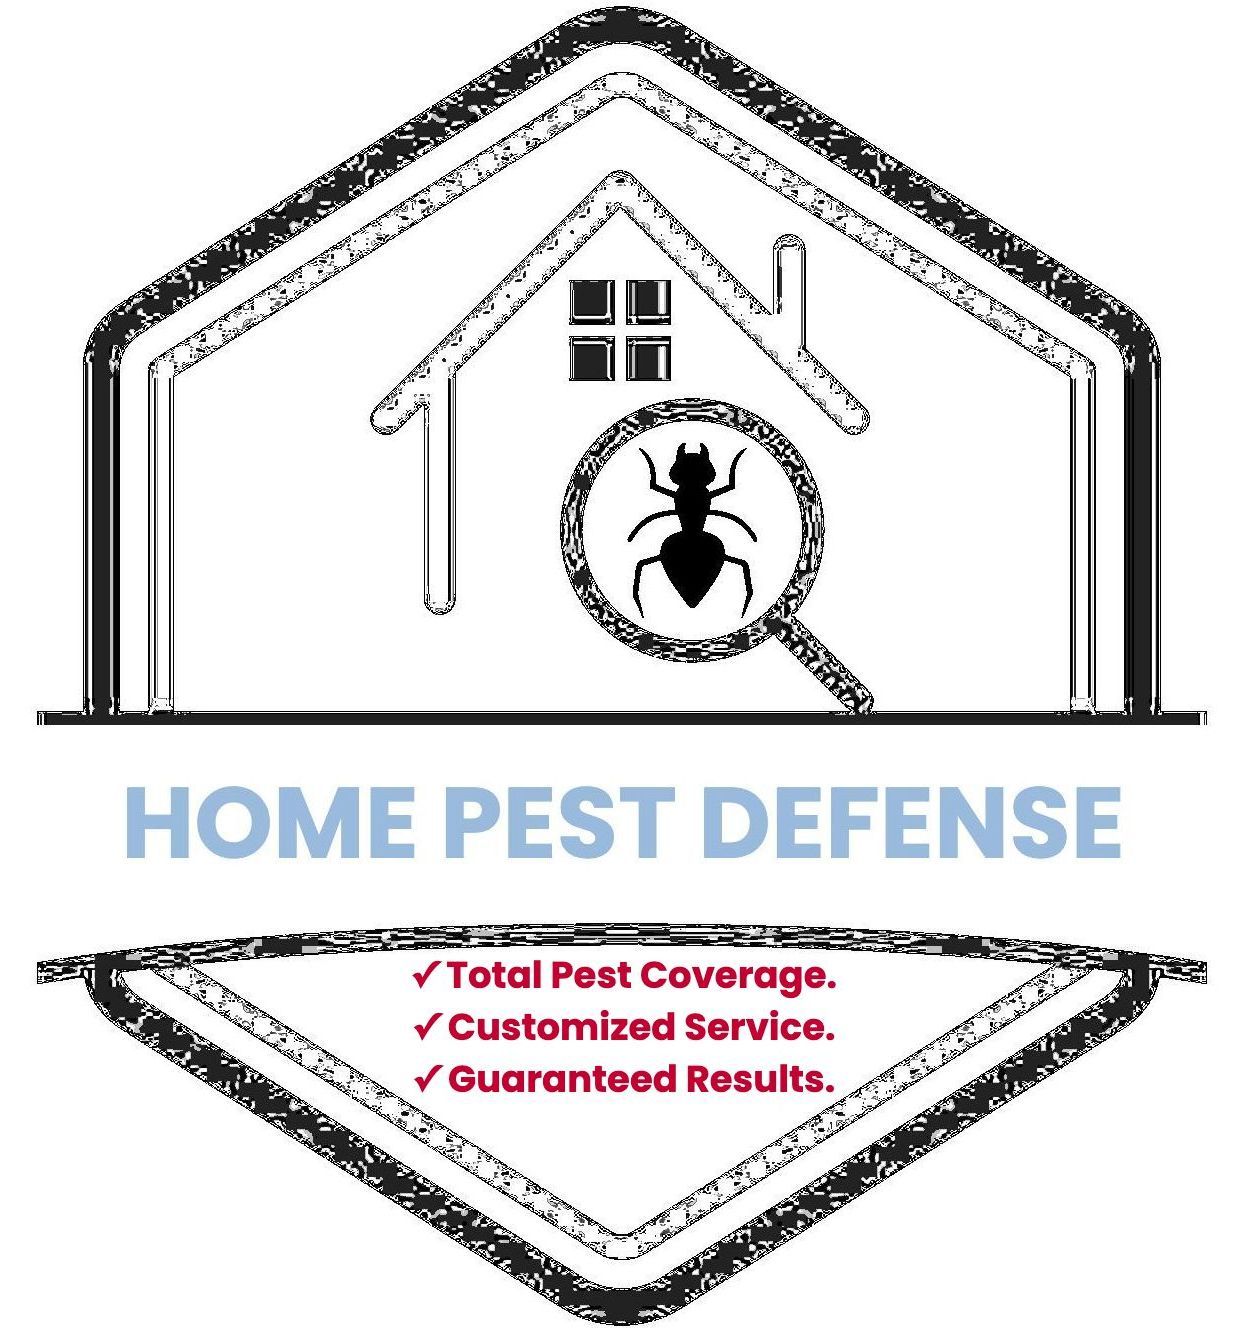 Home pest defense in Massachusetts. 